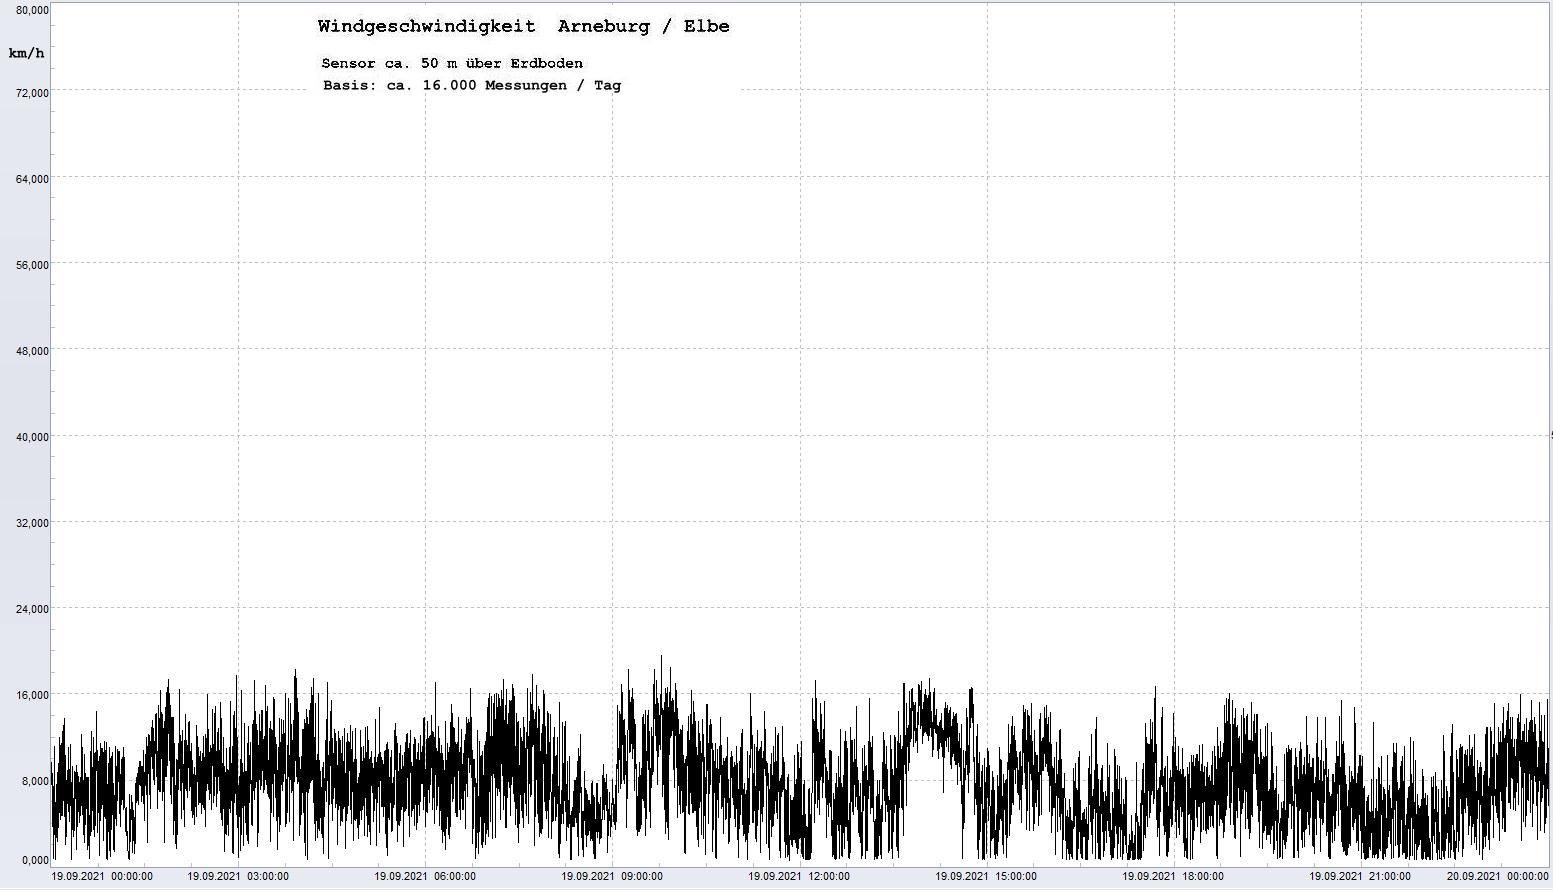 Arneburg Tages-Diagramm Winddaten, 19.09.2021
  Diagramm, Sensor auf Gebäude, ca. 50 m über Erdboden, Basis: 5s-Aufzeichnung